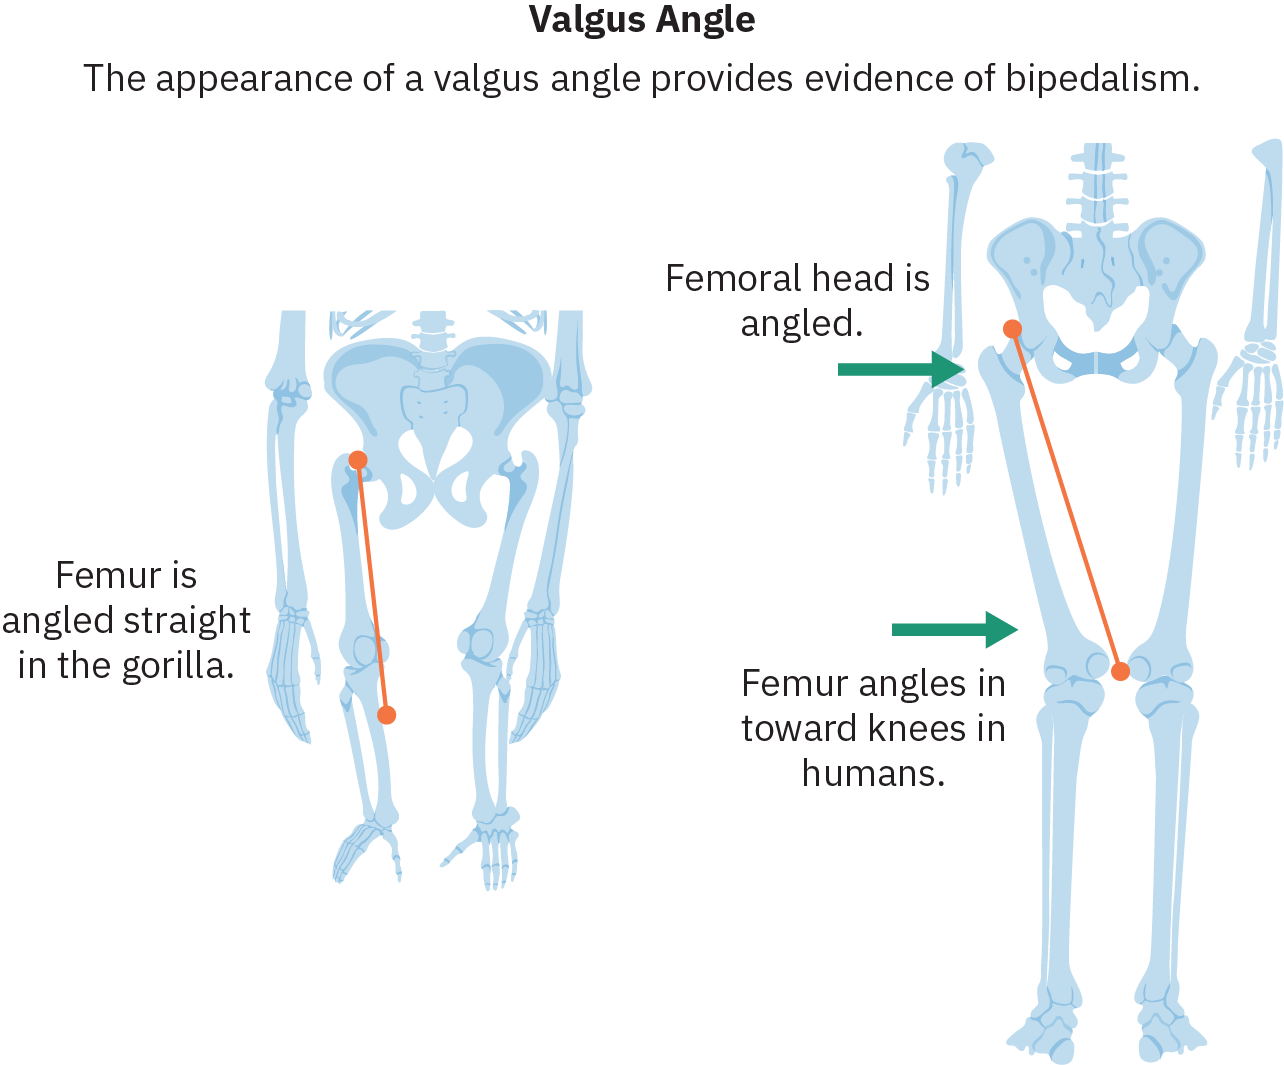 رسومات للوركين والساقين من نوعين مختلفين. على اليسار يوجد هيكل عظمي بأذرع طويلة وأرجل قصيرة تمتد مباشرة من الوركين. يوجد خط يتتبع عظم الفخذ (عظم الساق العلوي) والنص ذو الصلة مكتوب عليه «عظم الفخذ بزاوية مستقيمة في الغوريلا». على اليمين هيكل عظمي بشري. تنحني عظام الفخذ الموجودة على هذا الهيكل العظمي نحو الداخل، وتكون الركبتان أقرب إلى بعضهما من مآخذ الورك. النص الذي يشير إلى الورك يقول «رأس الفخذ بزاوية». النص الذي يشير إلى عظم الفخذ يقول: «زوايا عظم الفخذ في اتجاه الركبتين عند البشر».